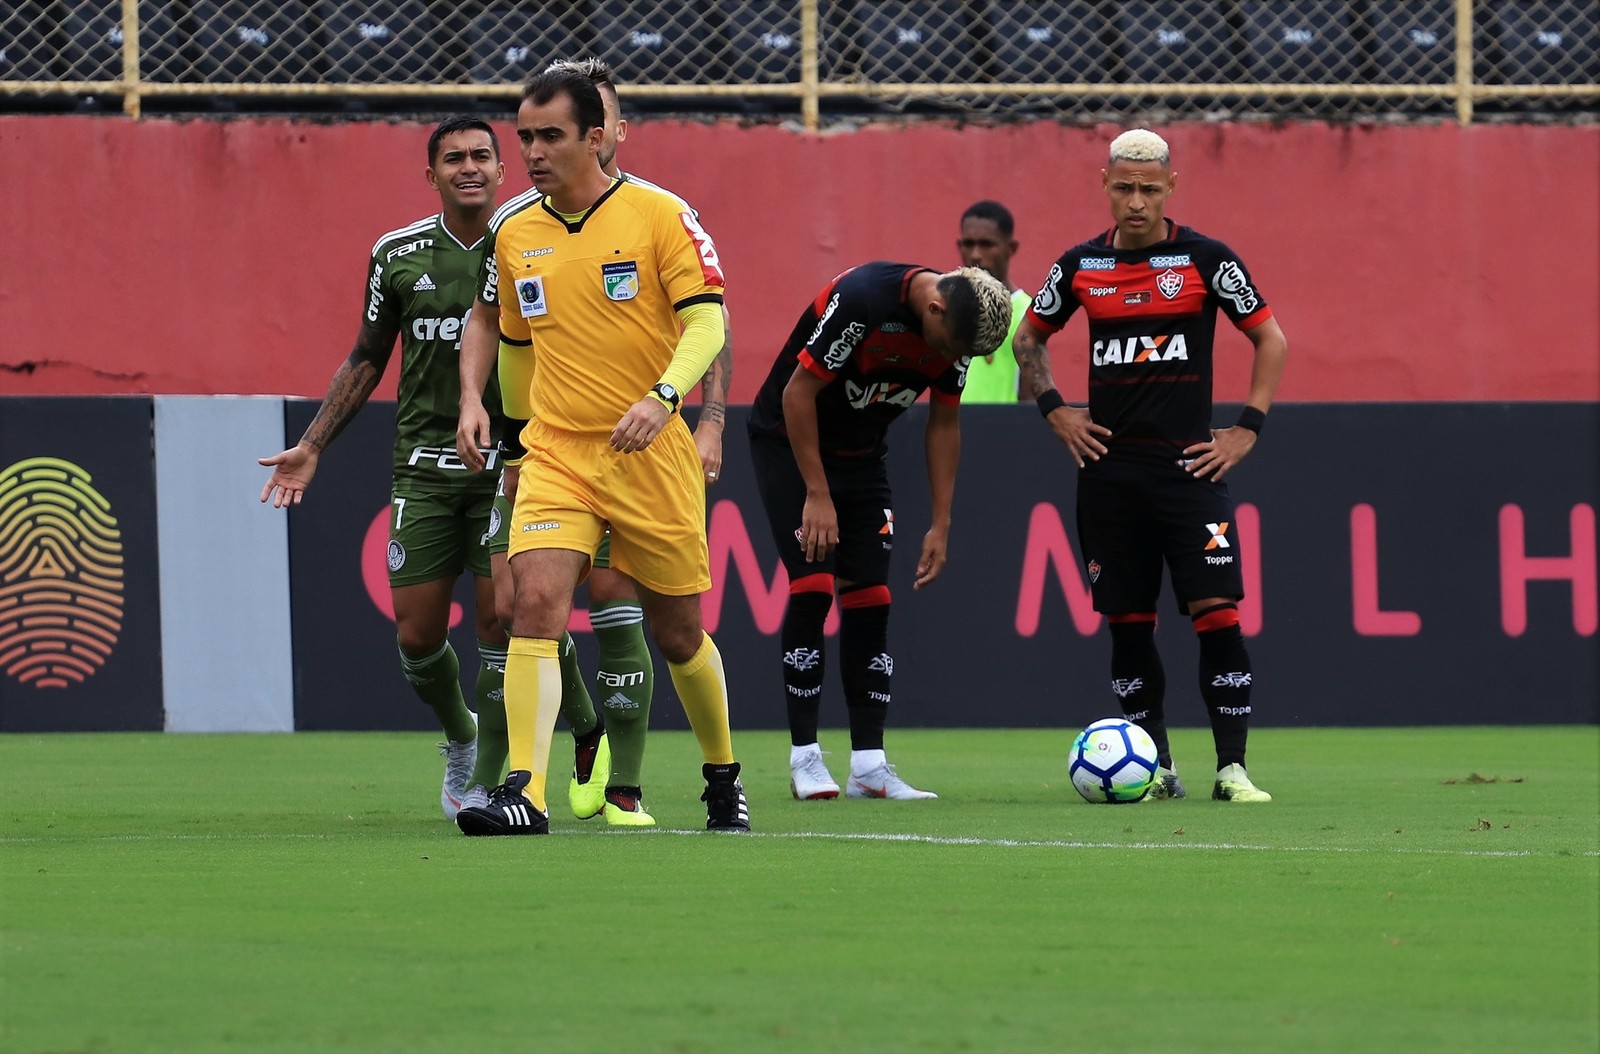 Irritado após mais uma goleada, André Lima dispara: “resultado ridículo”